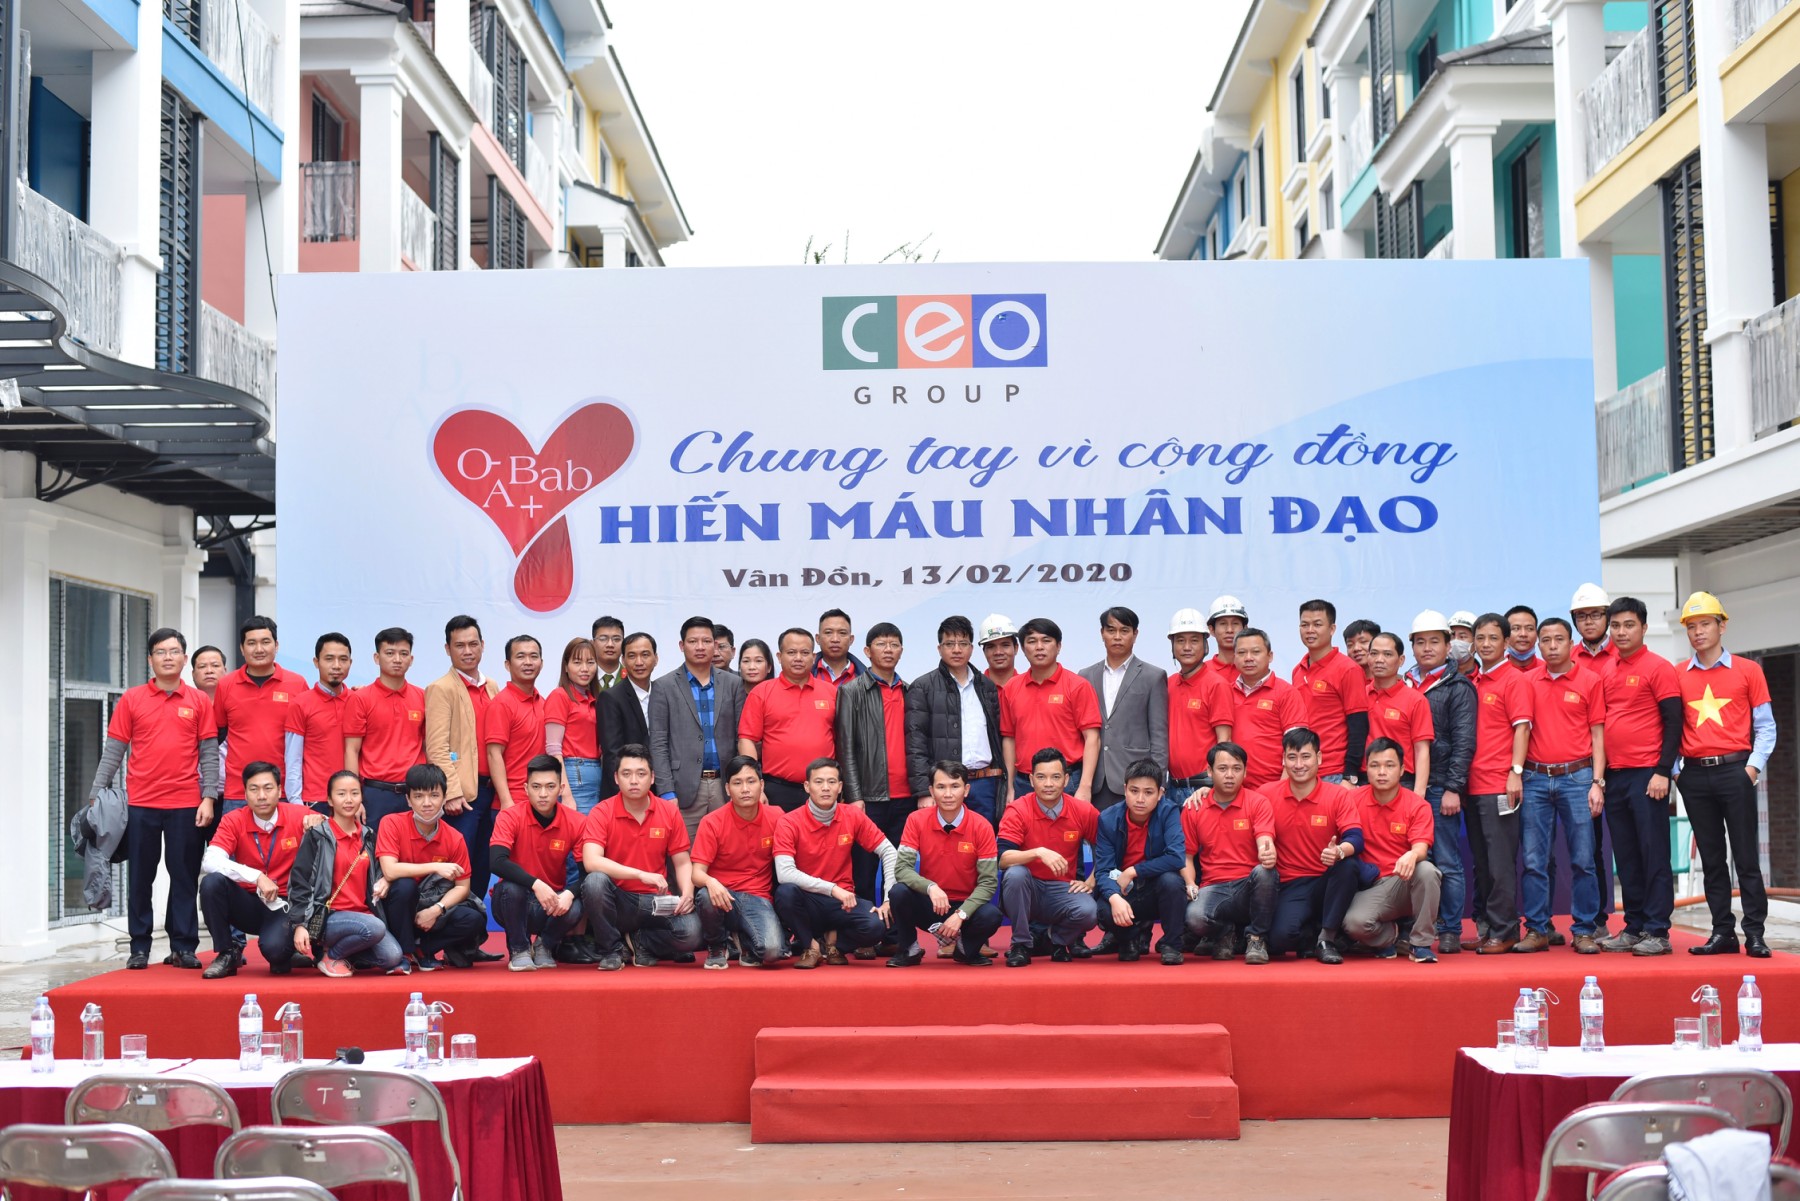 CBNV CEO Vân Đồn tích cực tham gia công tác hiến máu nhân đạo tại địa phương.